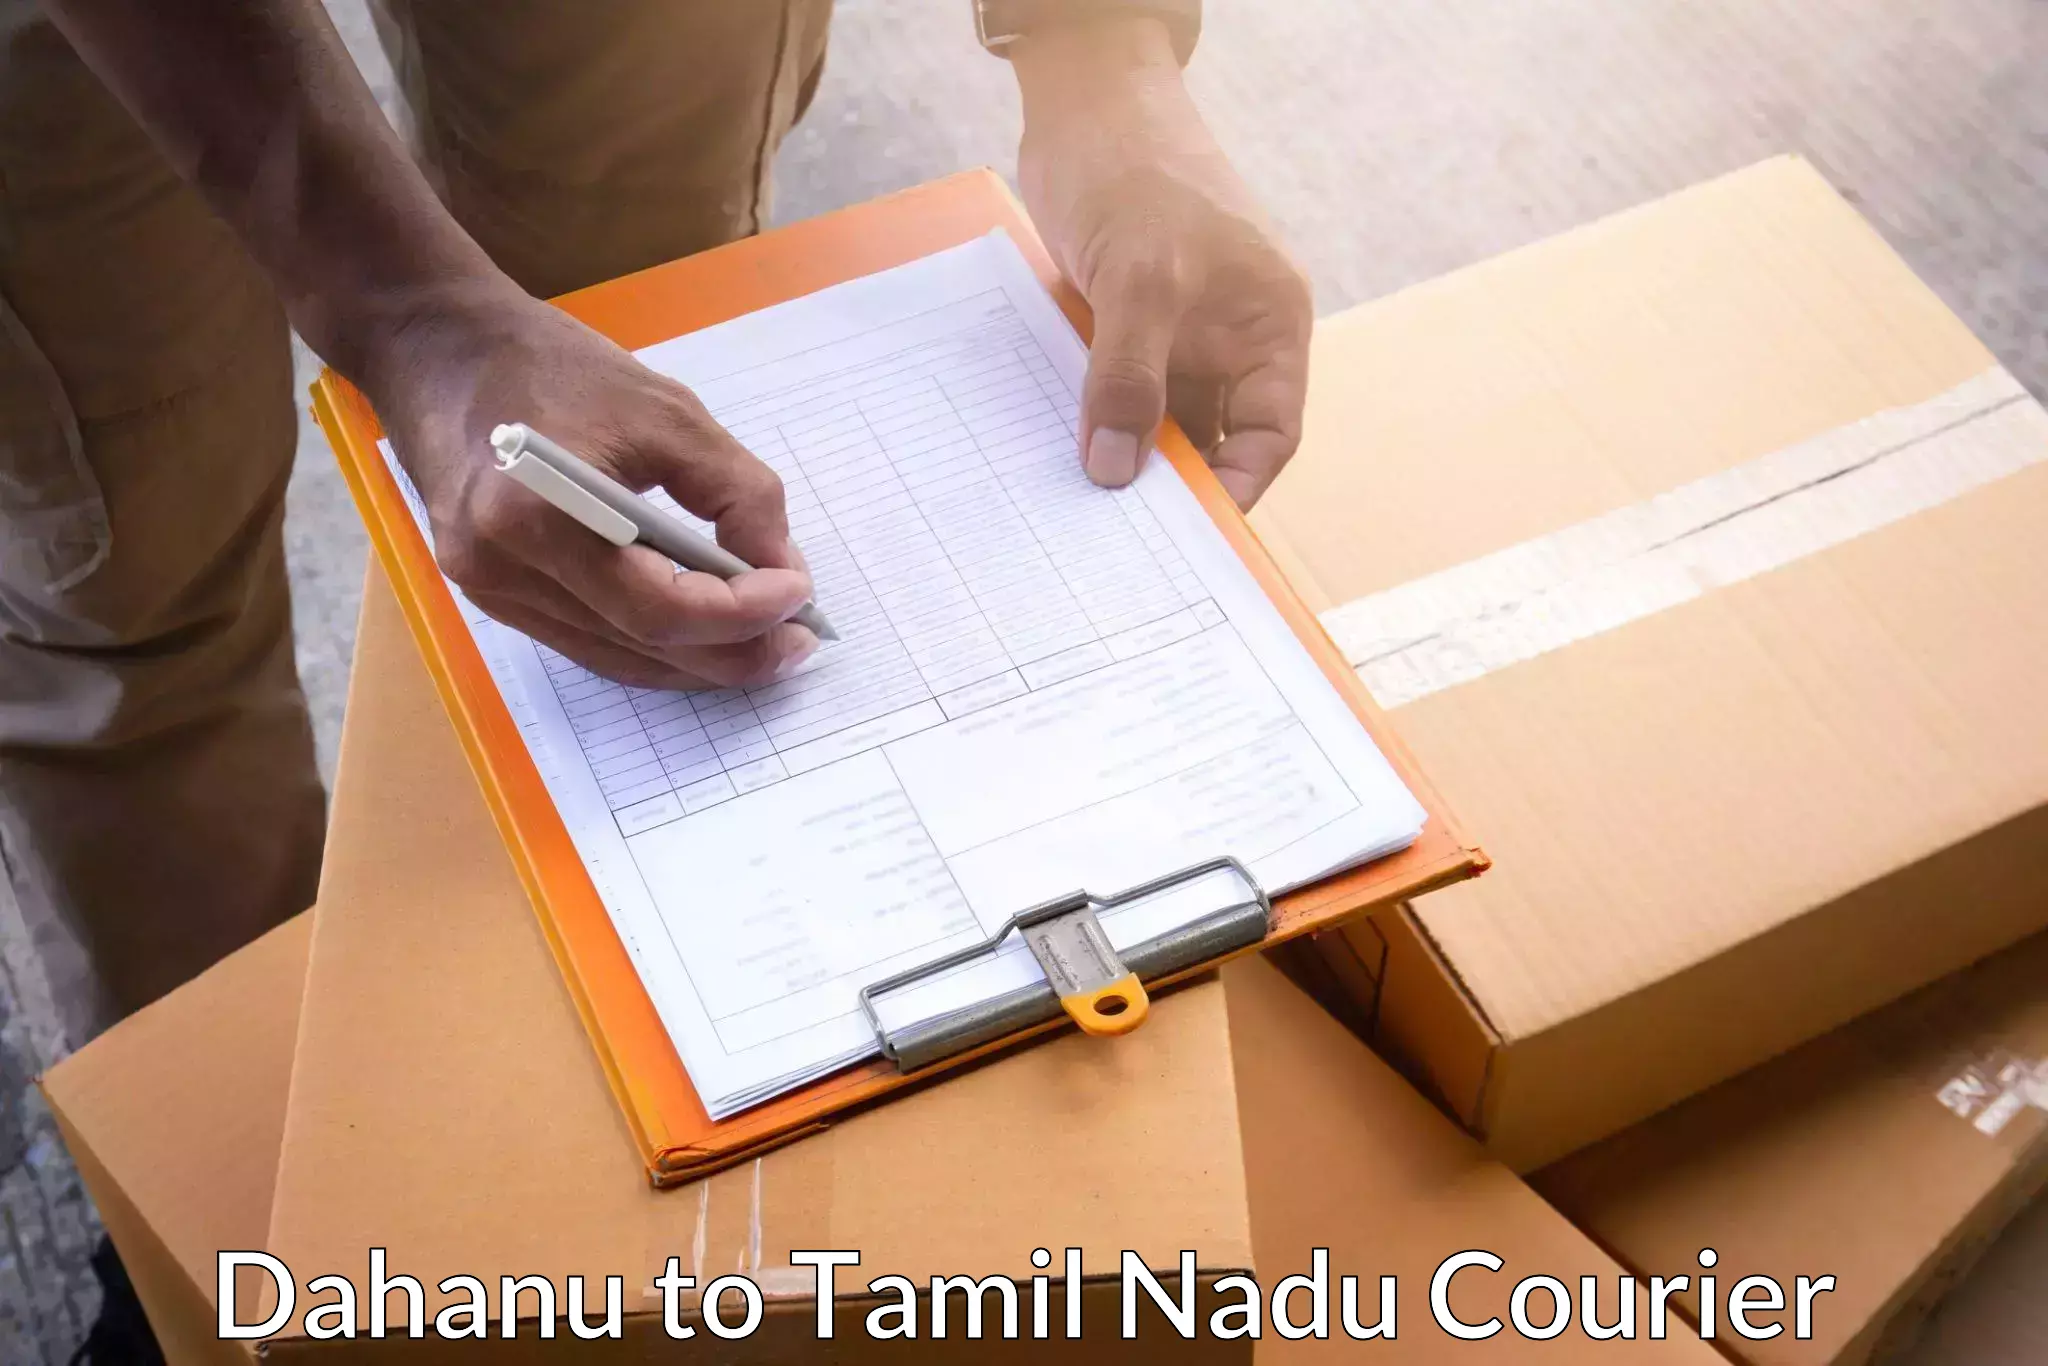 High-efficiency logistics Dahanu to Tirupur